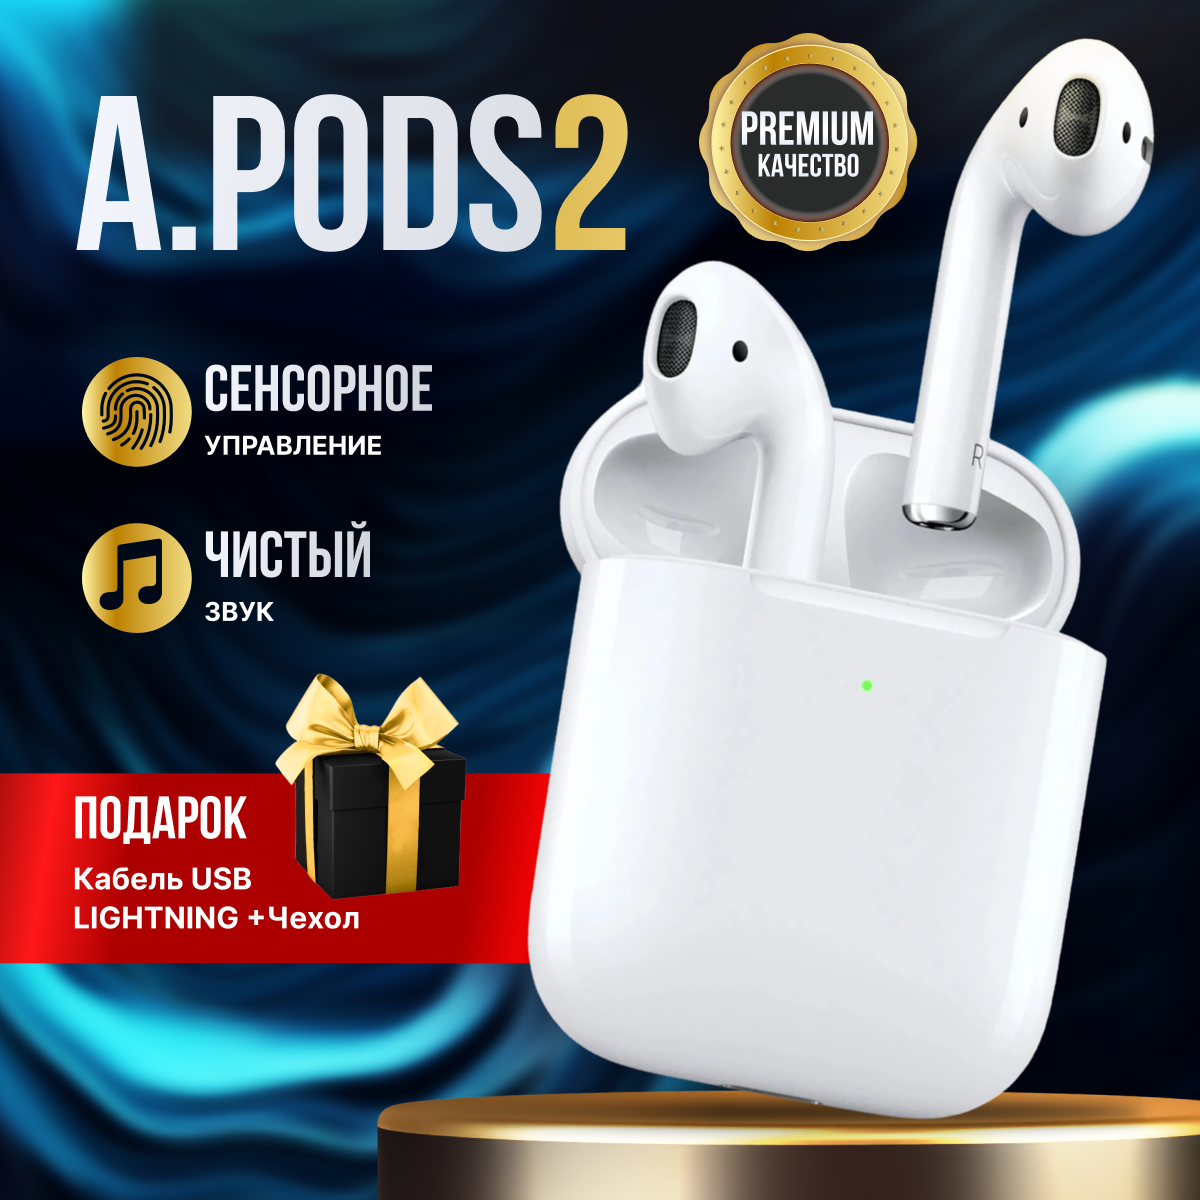 Наушники беспроводные A.Pods 2 с микрофоном. Сенсорное управление. Блютуз наушники. tws для android / ios. Bluetooth 5.0.